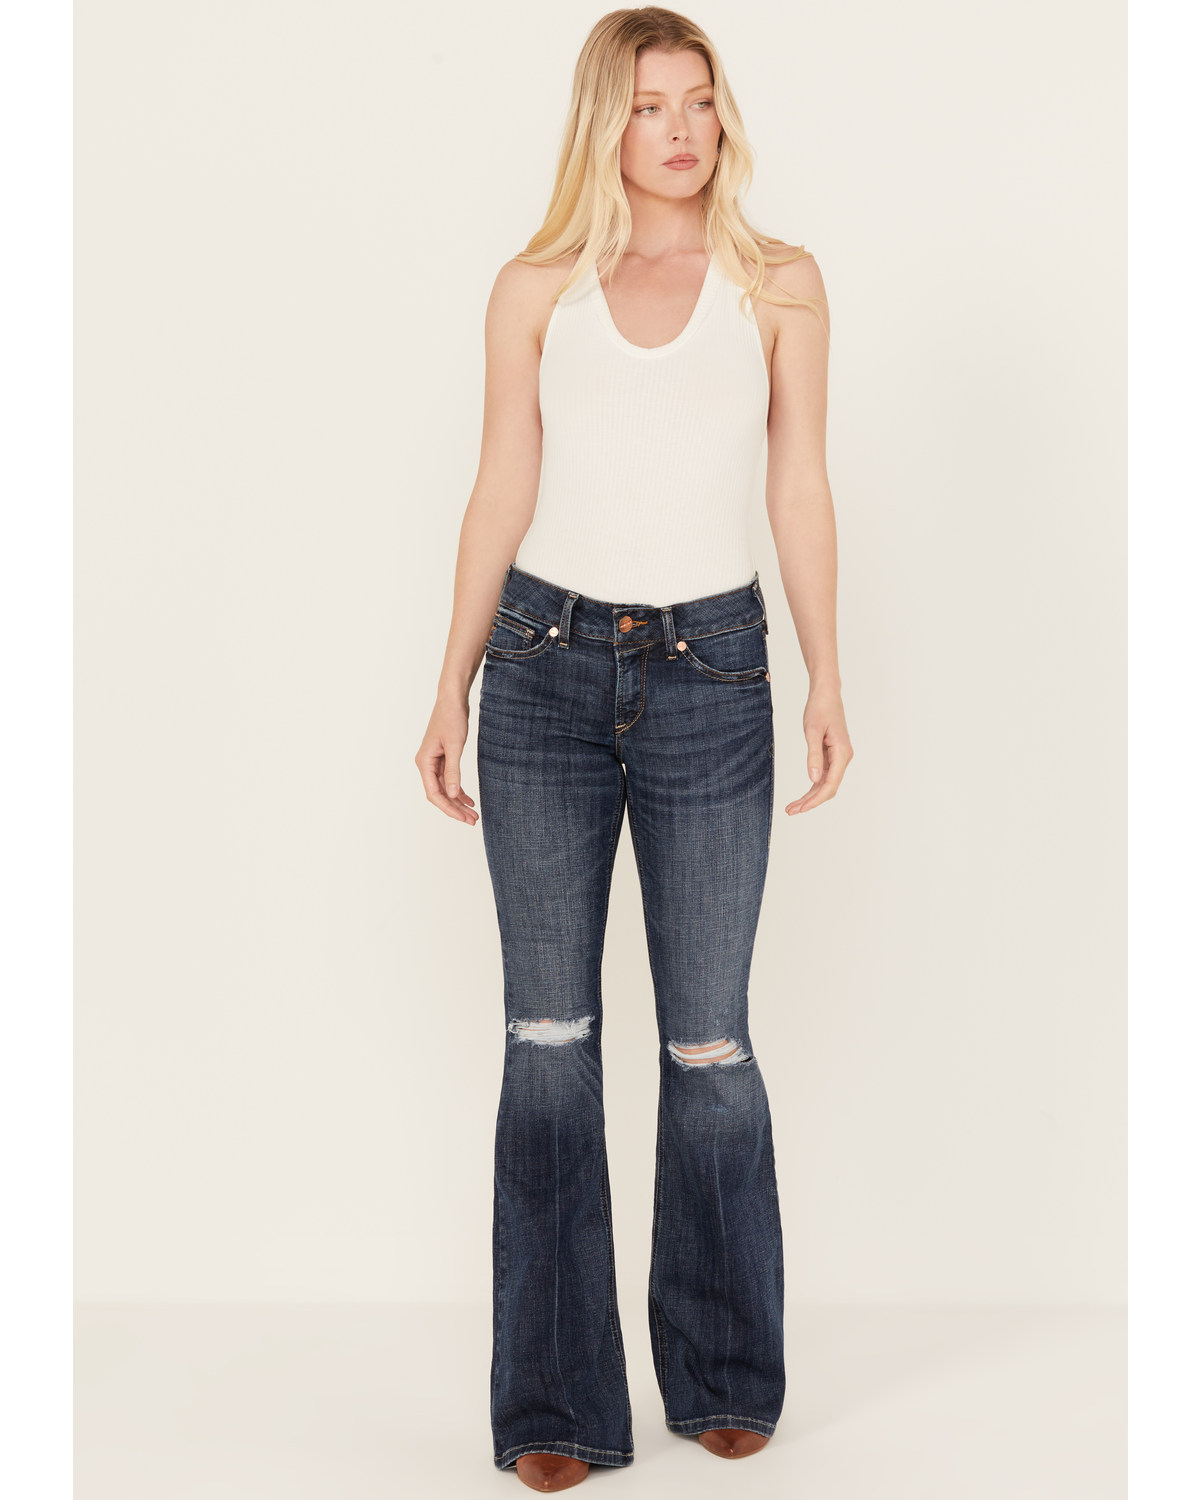 Ariat Women's R.E.A.L. Perfect Rise Zoe Stretch Flare Jeans